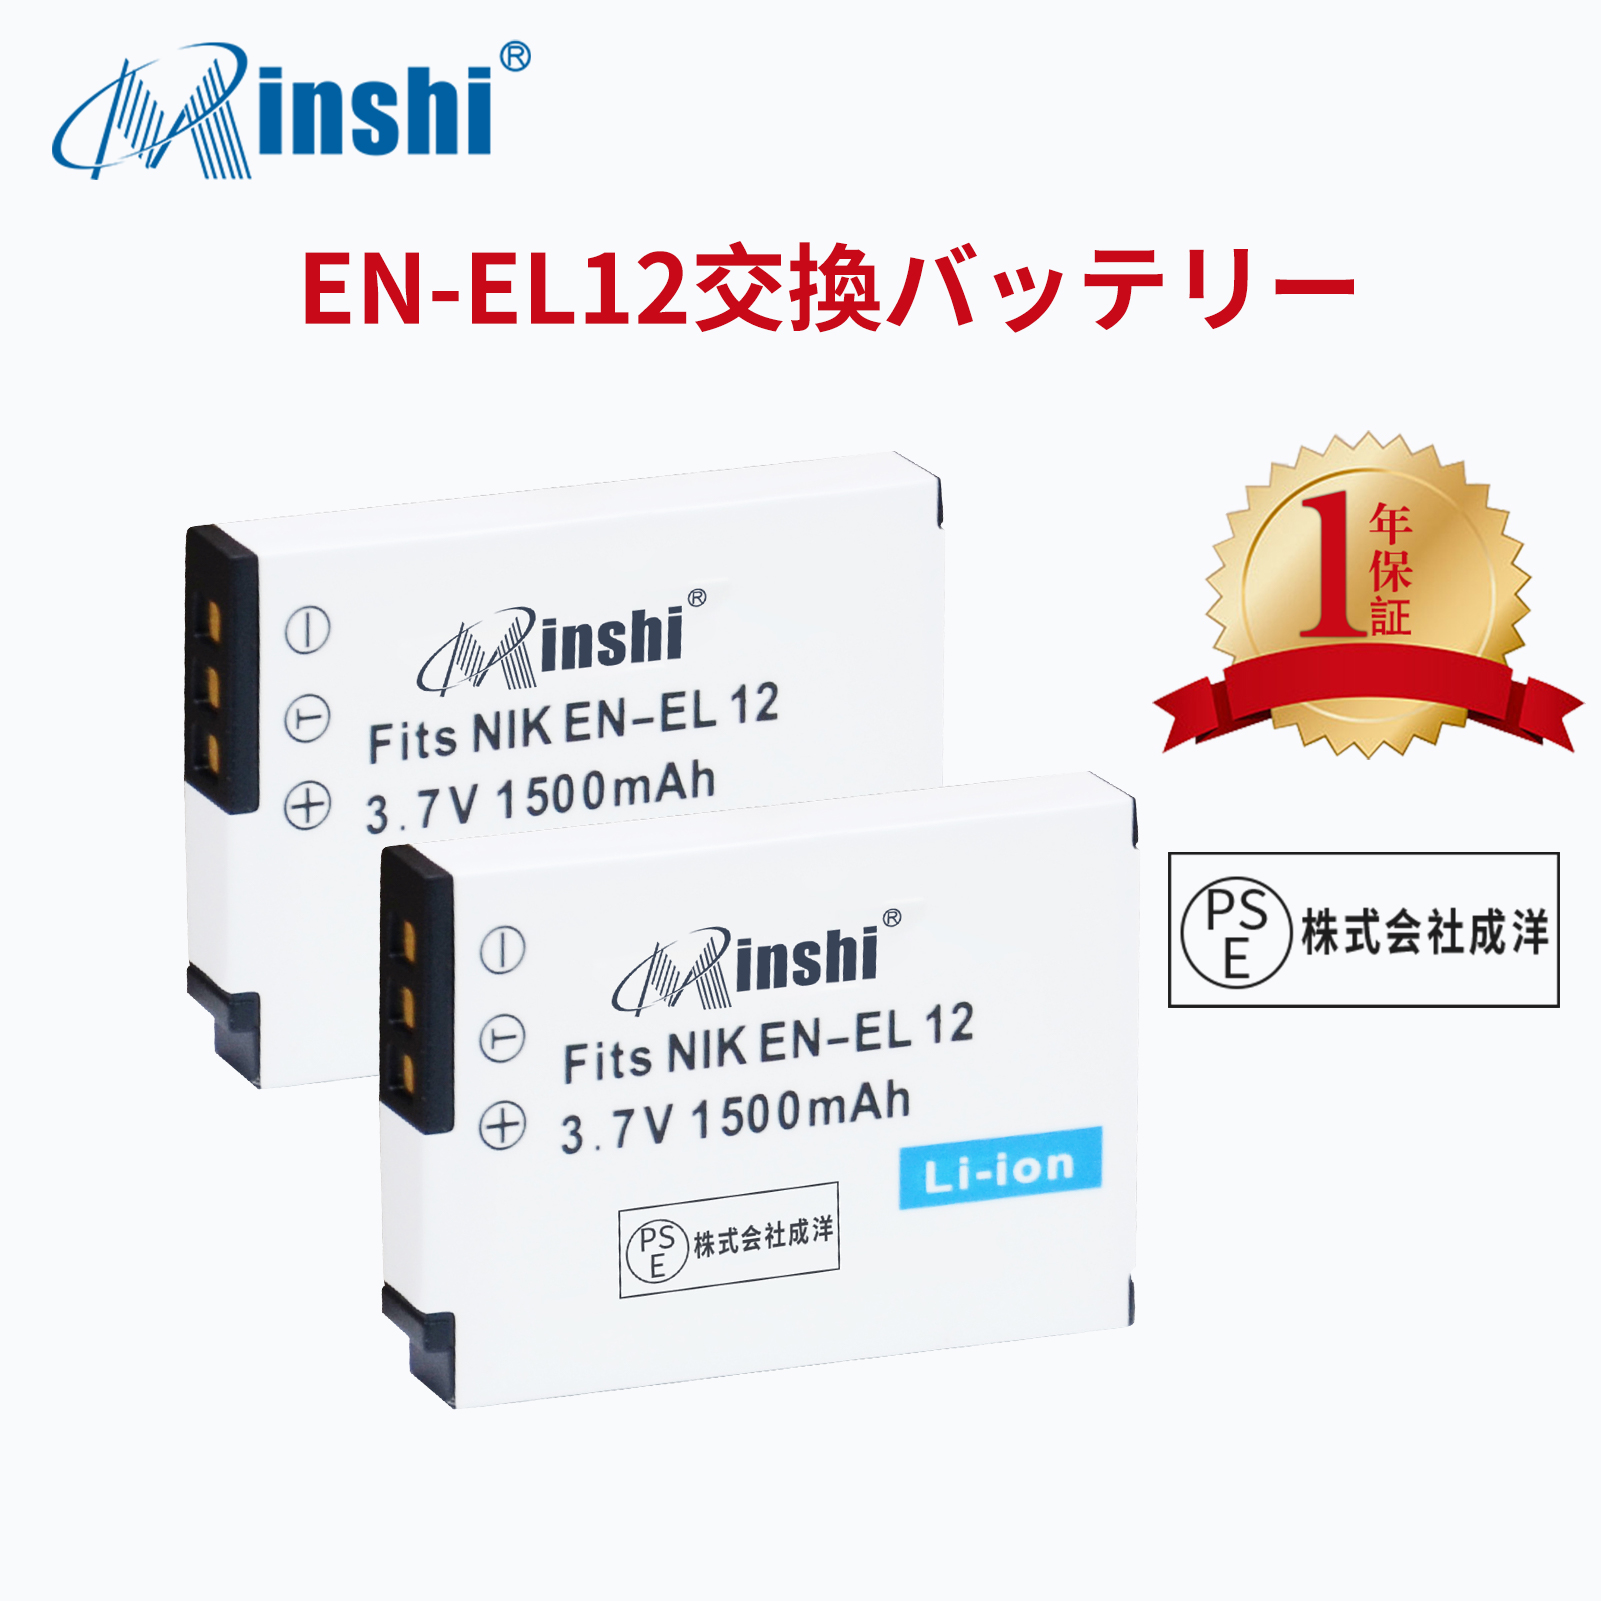 【２個】minshi NIKON COOLPIX S9100 AW100 【1500mAh 3.7V】PSE認定済 高品質 EN-EL12 交換用バッテリー